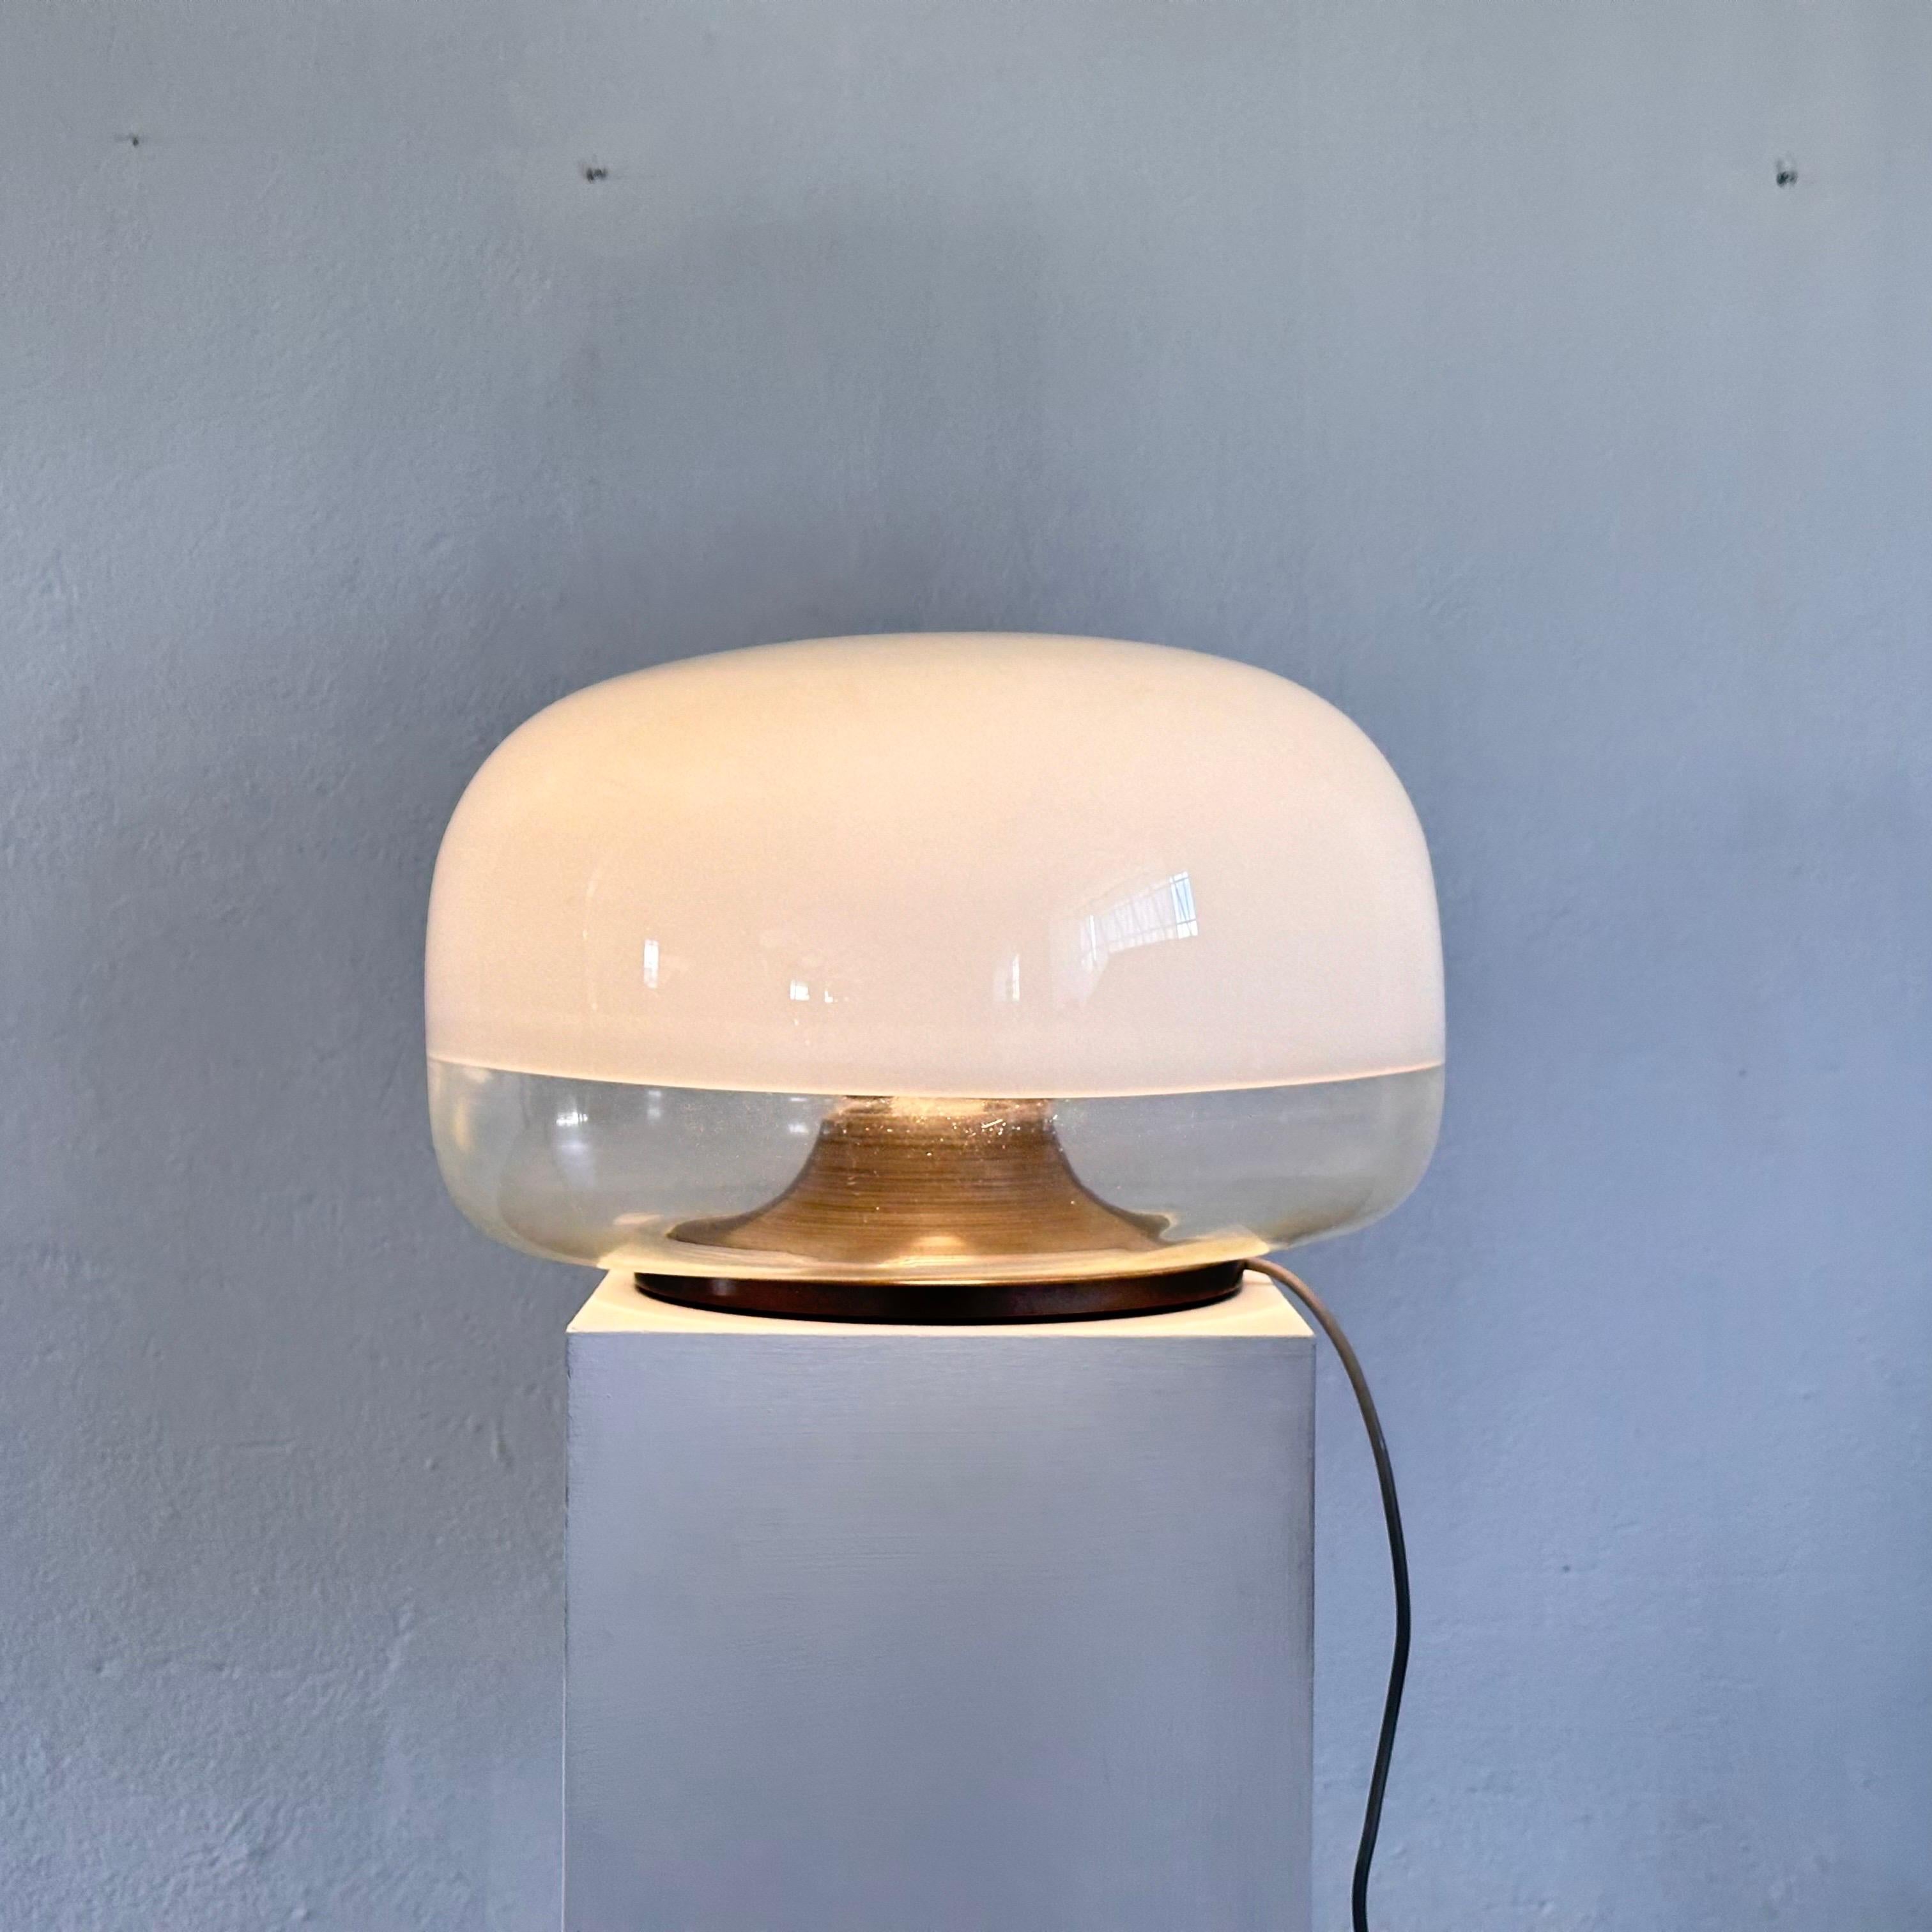  Illuminez votre espace avec une élégance intemporelle et un savoir-faire italien grâce à cette exquise lampe de table en verre 